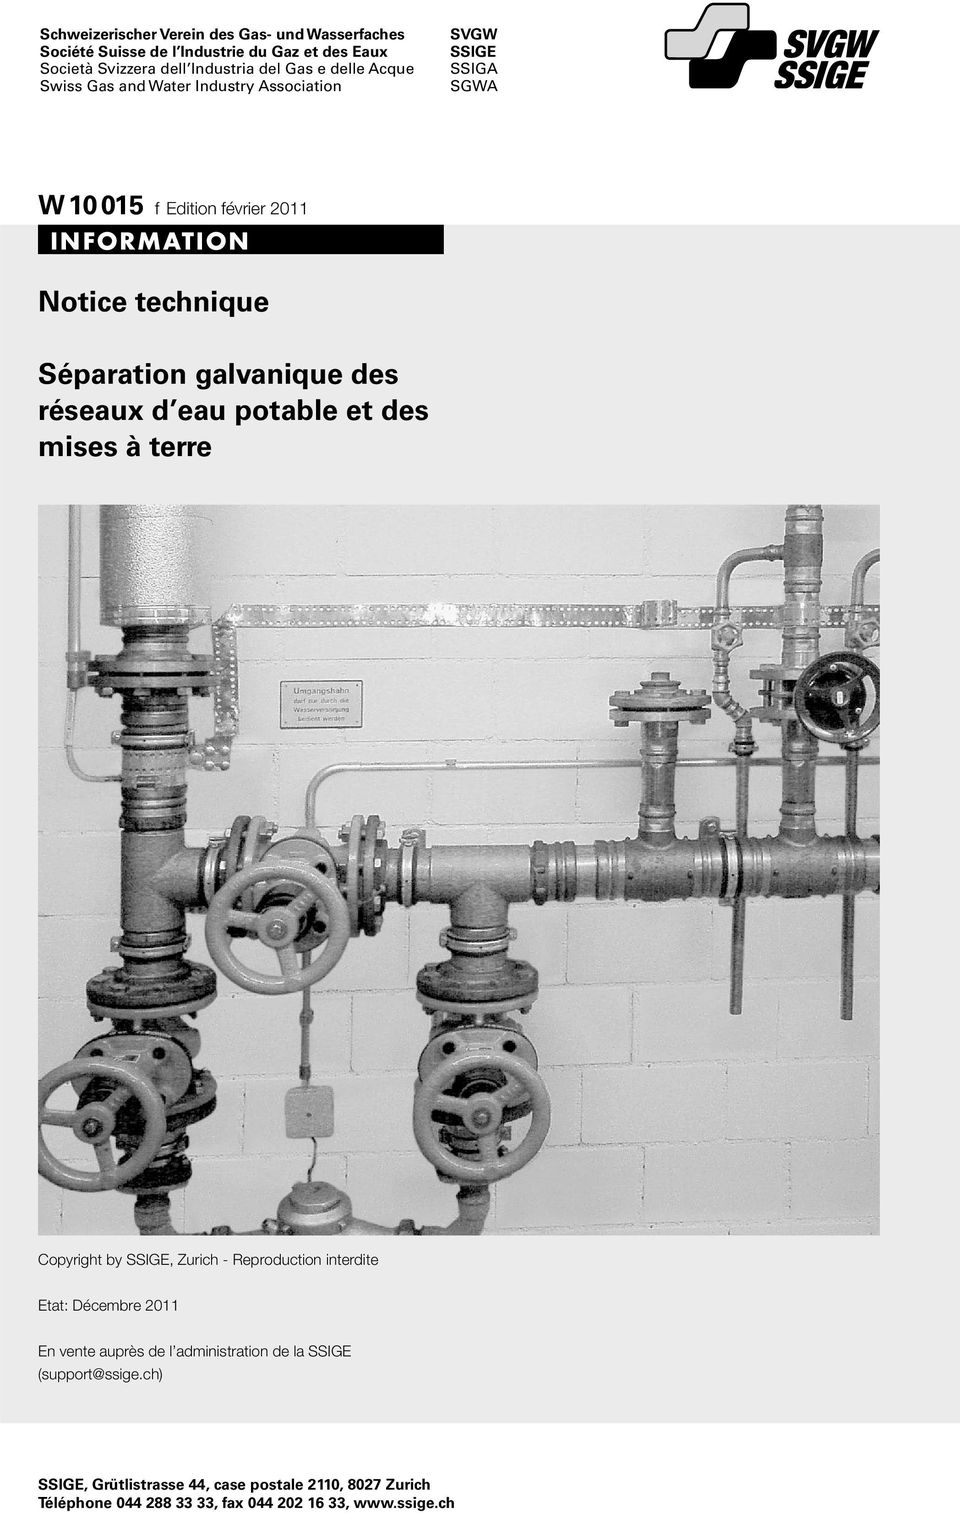 galvanique des réseaux d eau potable et des mises à terre Copyright by SSIGE, Zurich - Reproduction interdite Etat: Décembre 2011 En vente auprès de